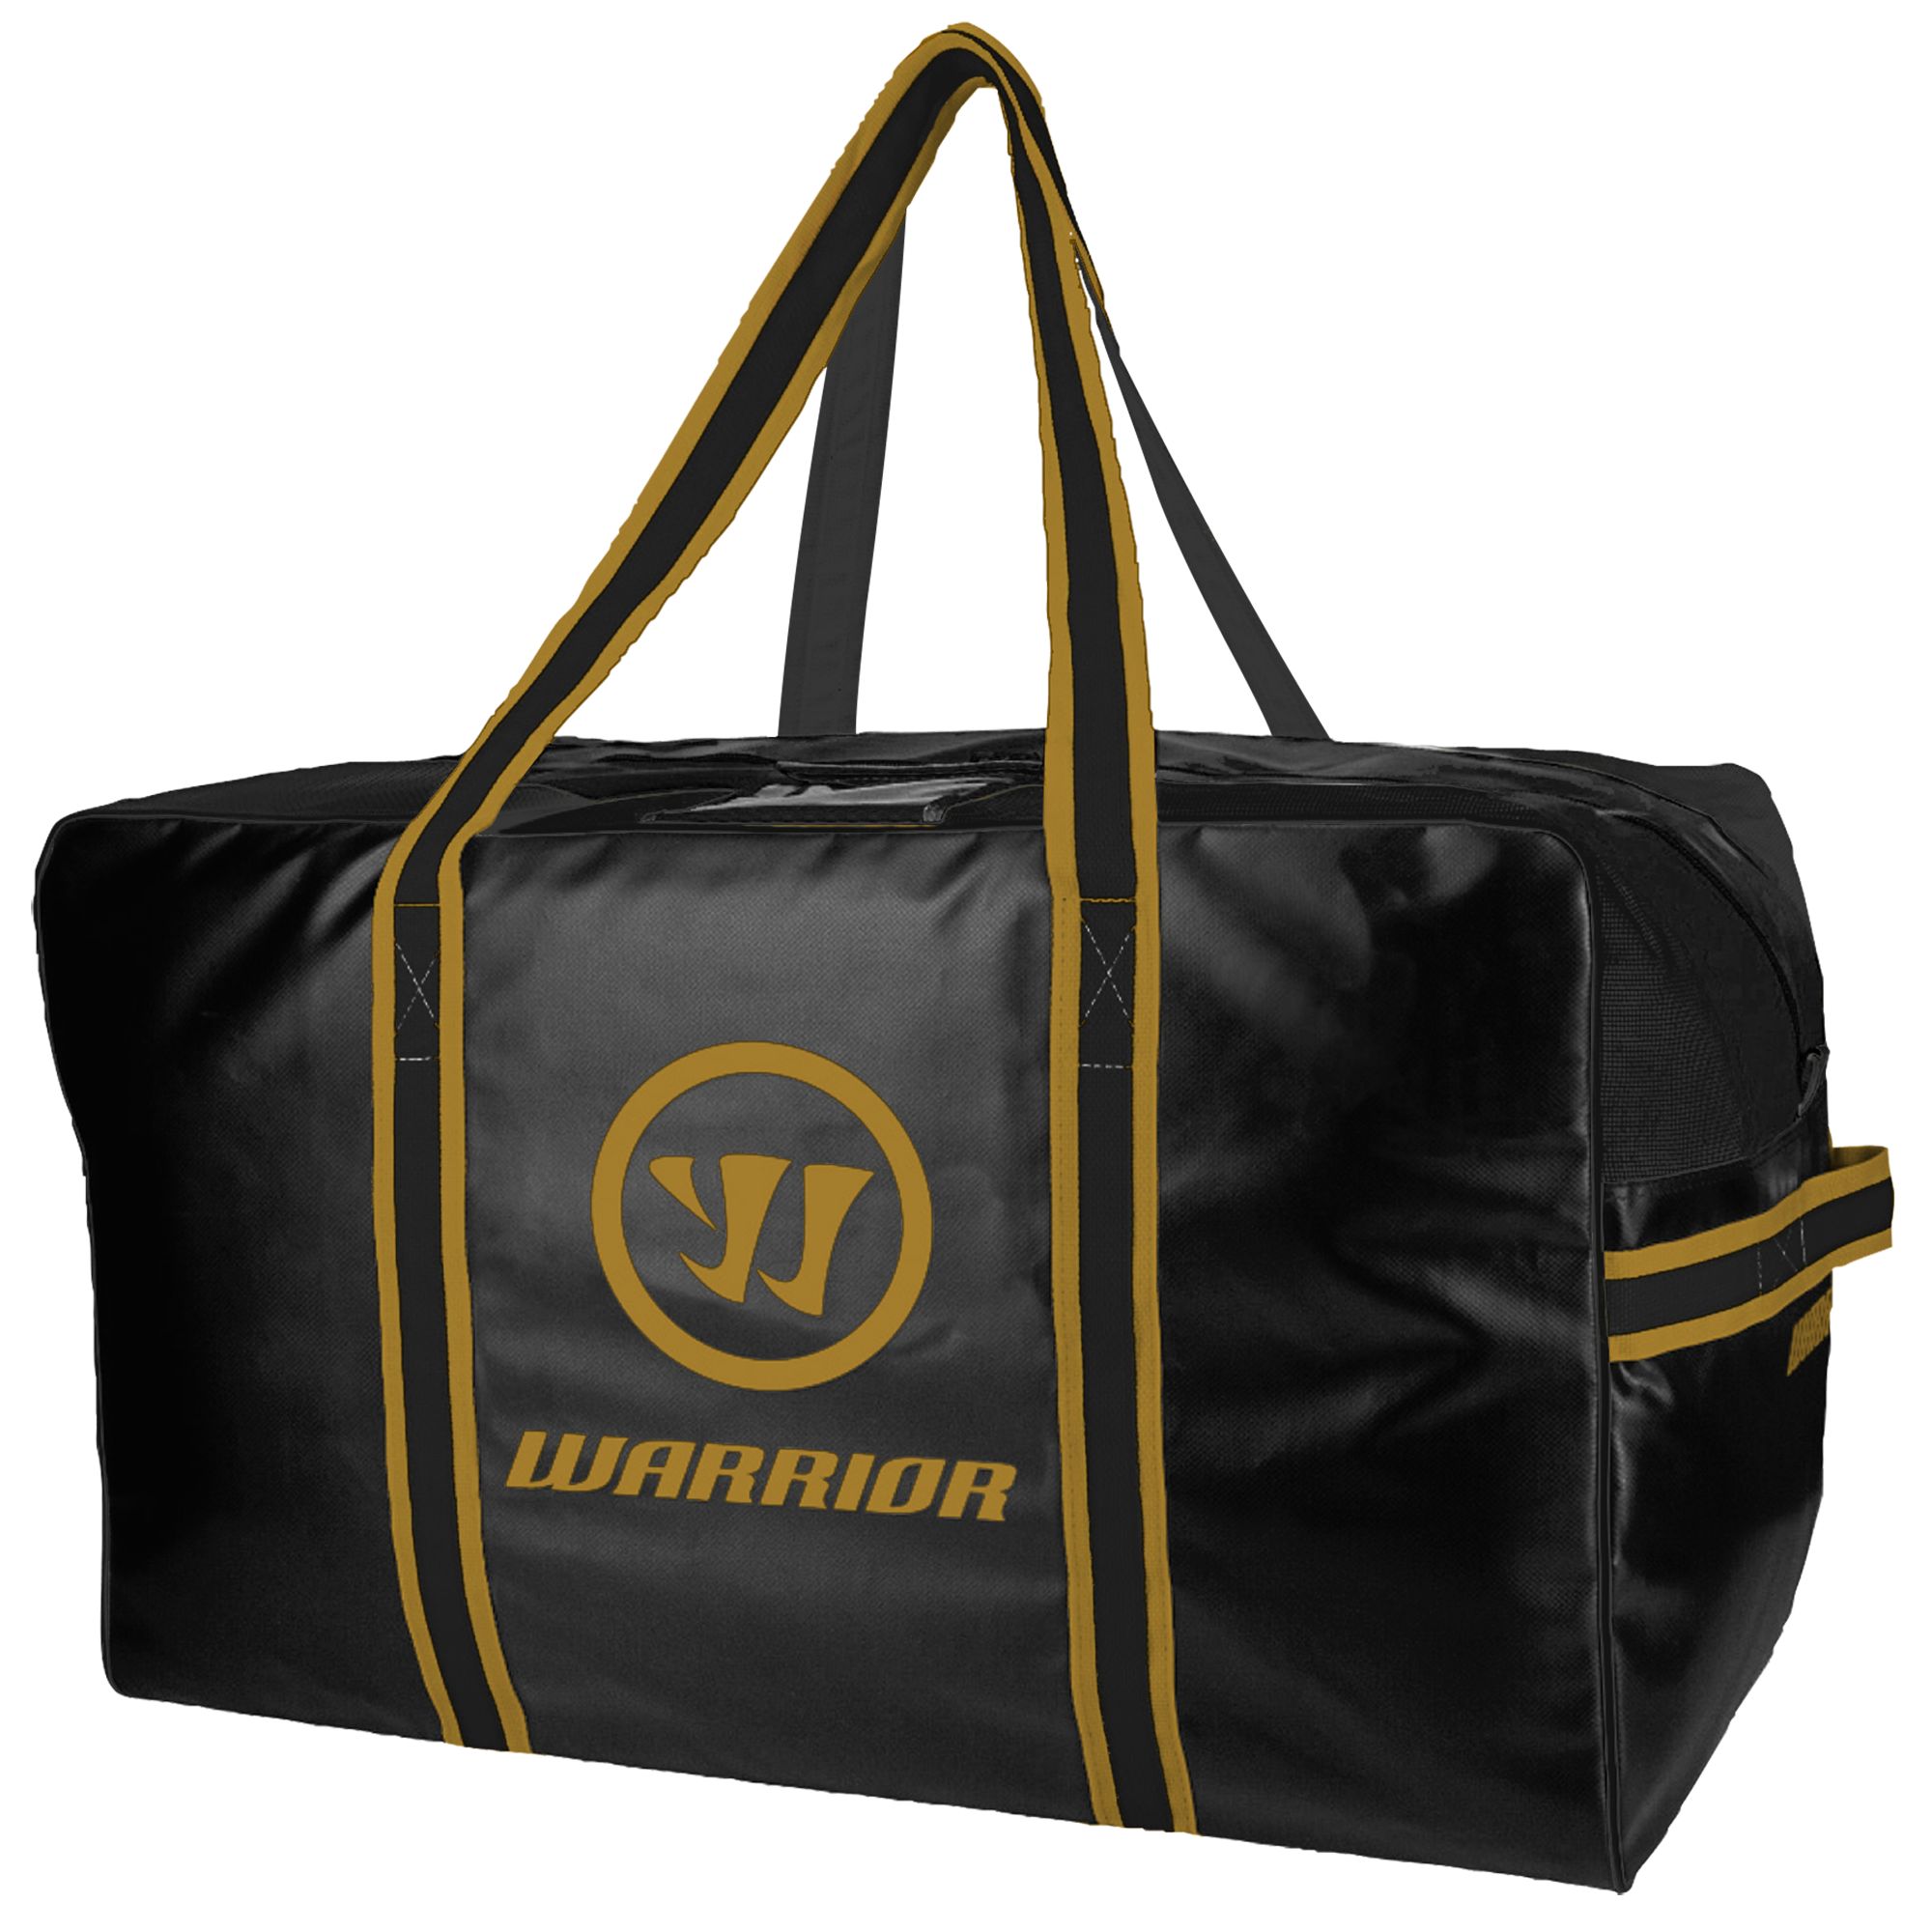 Warrior Pro Bag, Black with Vegas Gold image number 1